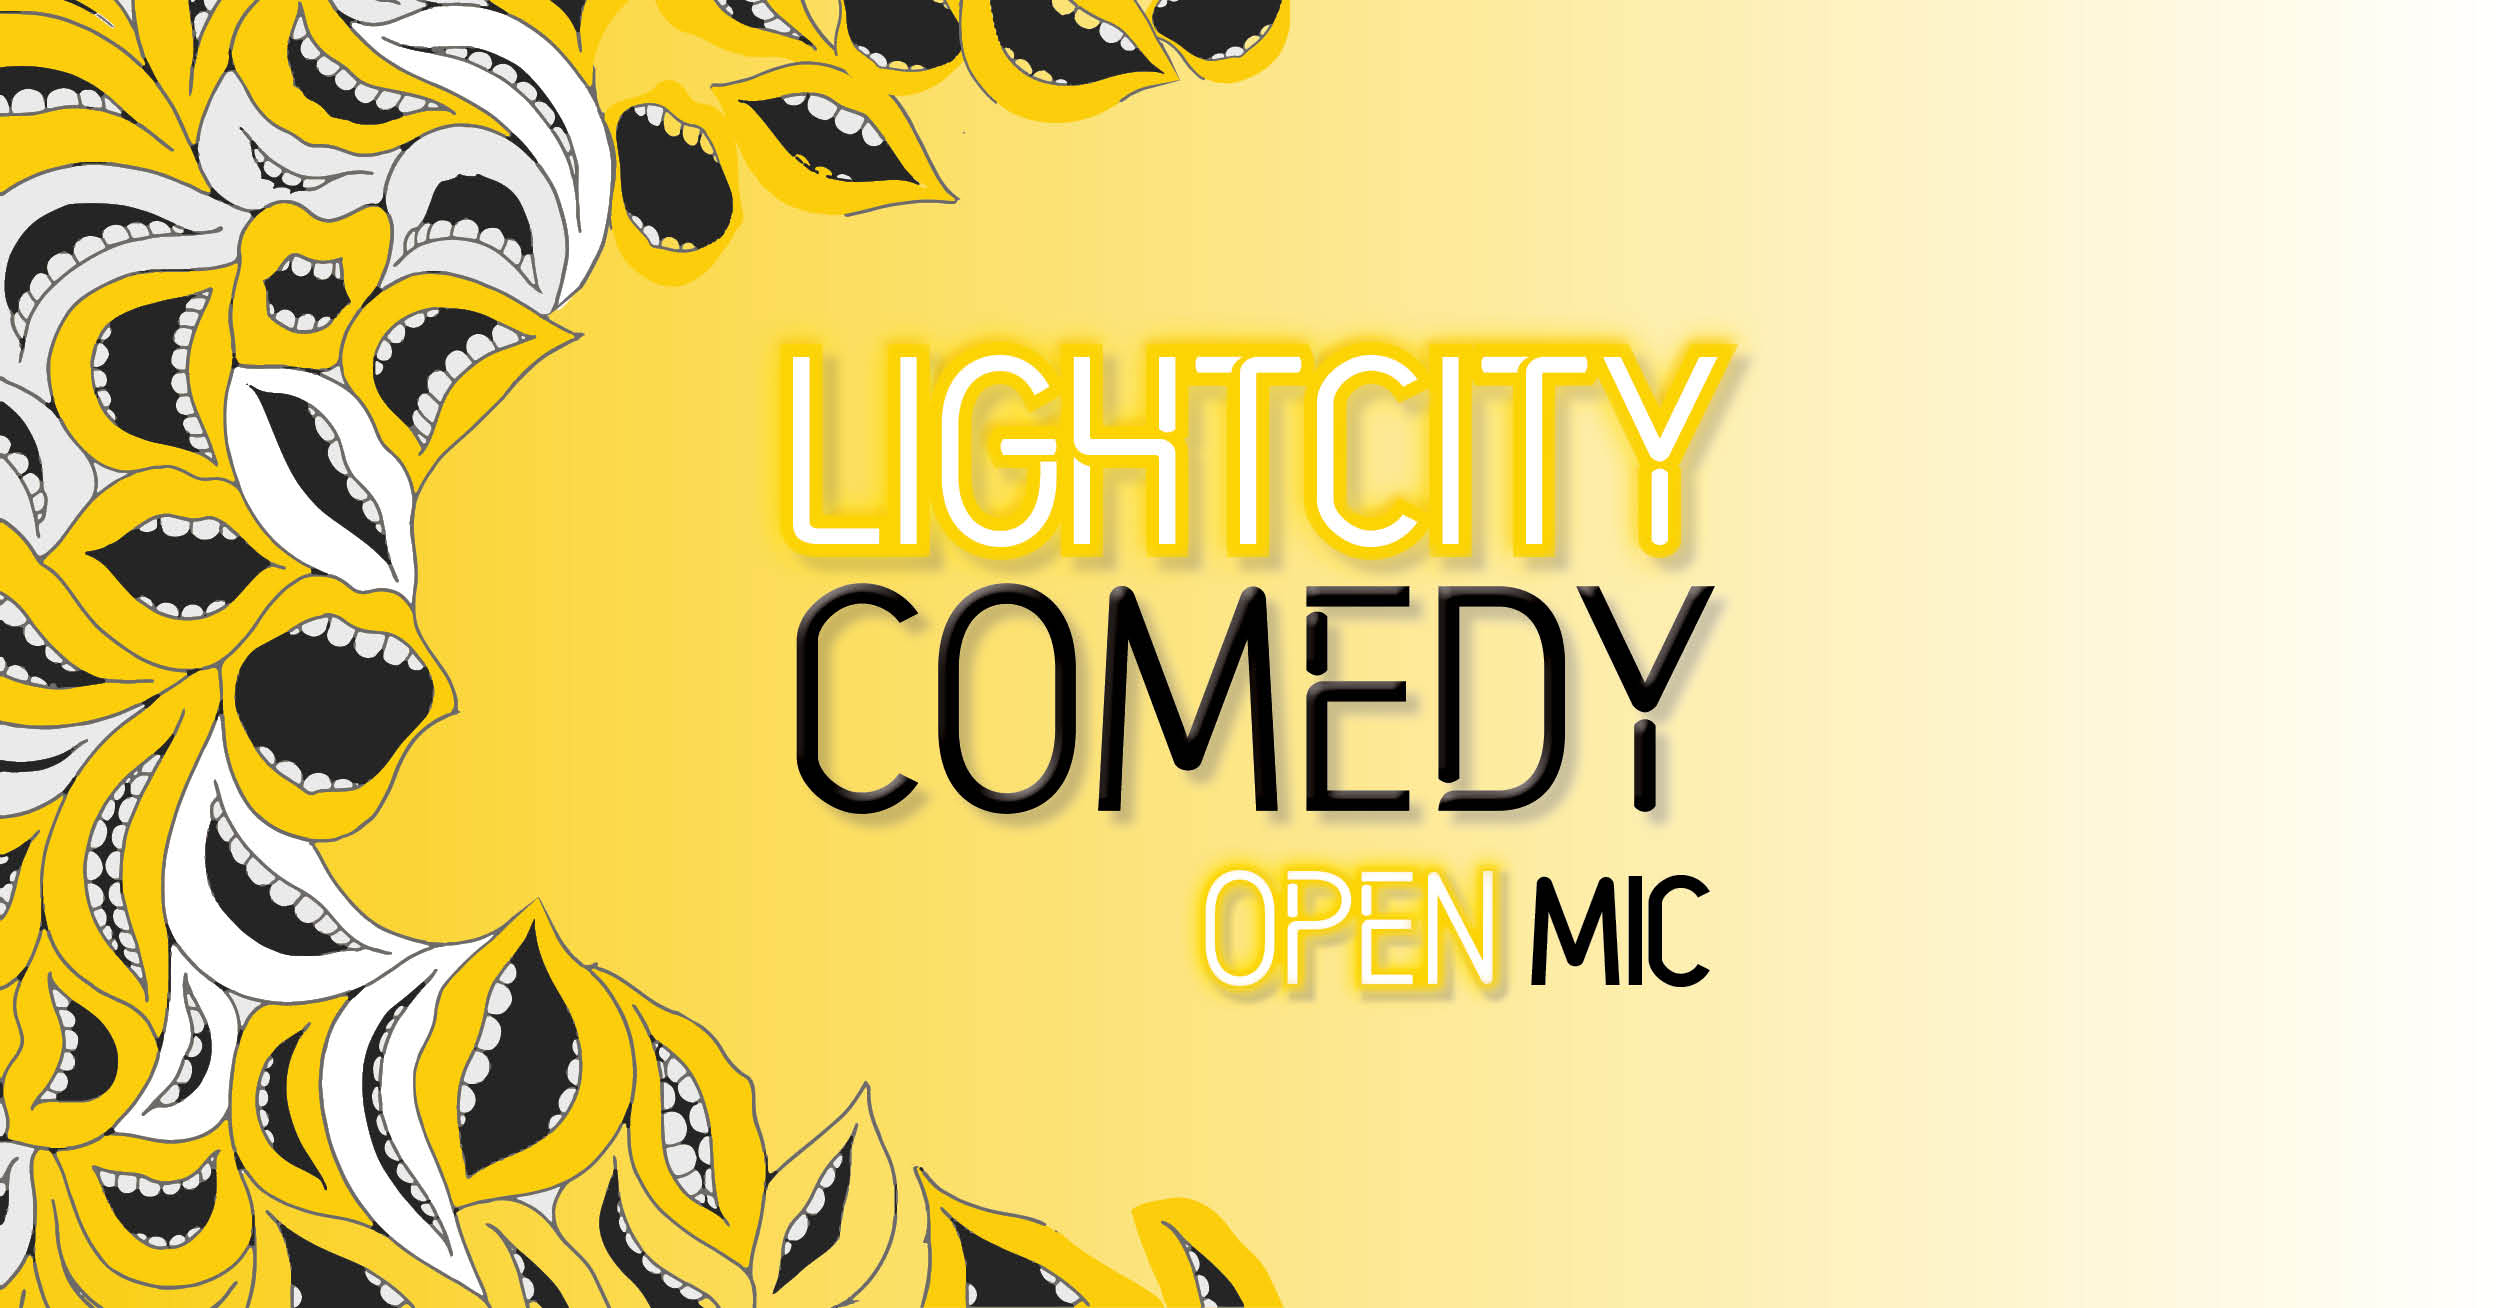 Ticket kopen voor evenement Lightcity Comedy Open Mic @ Dynamo